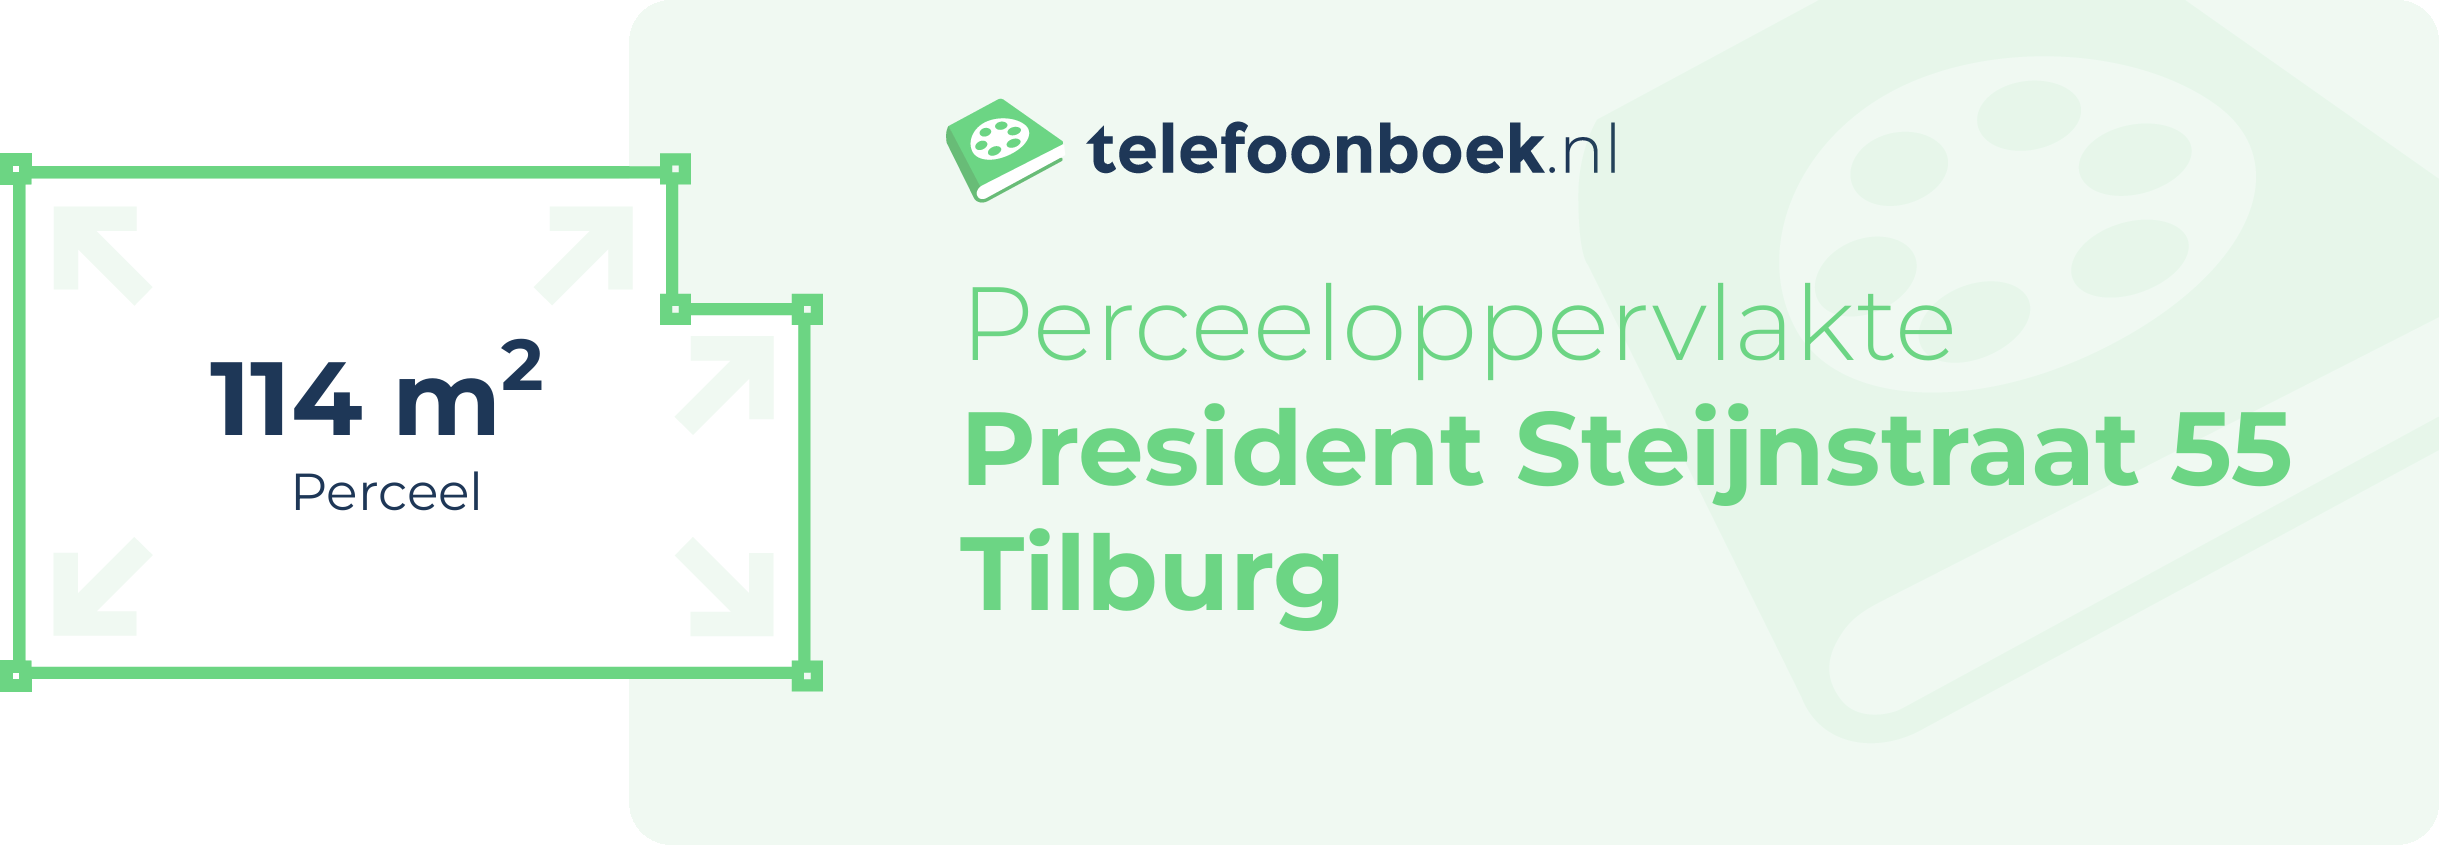 Perceeloppervlakte President Steijnstraat 55 Tilburg